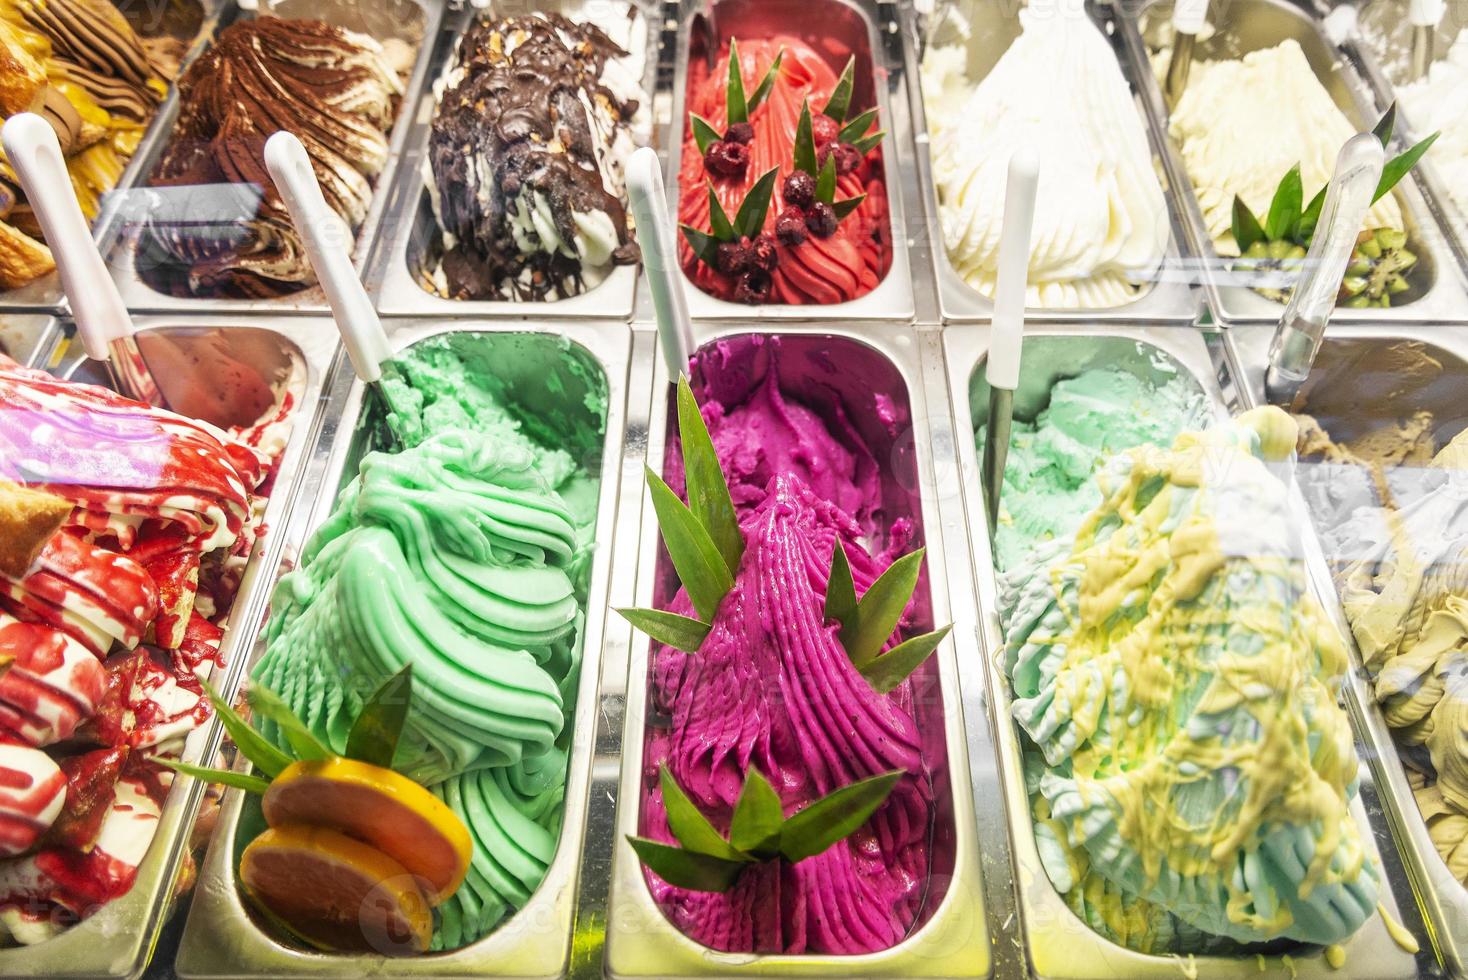 vários sabores de sorvete de gelato italiano em vitrine de loja moderna foto